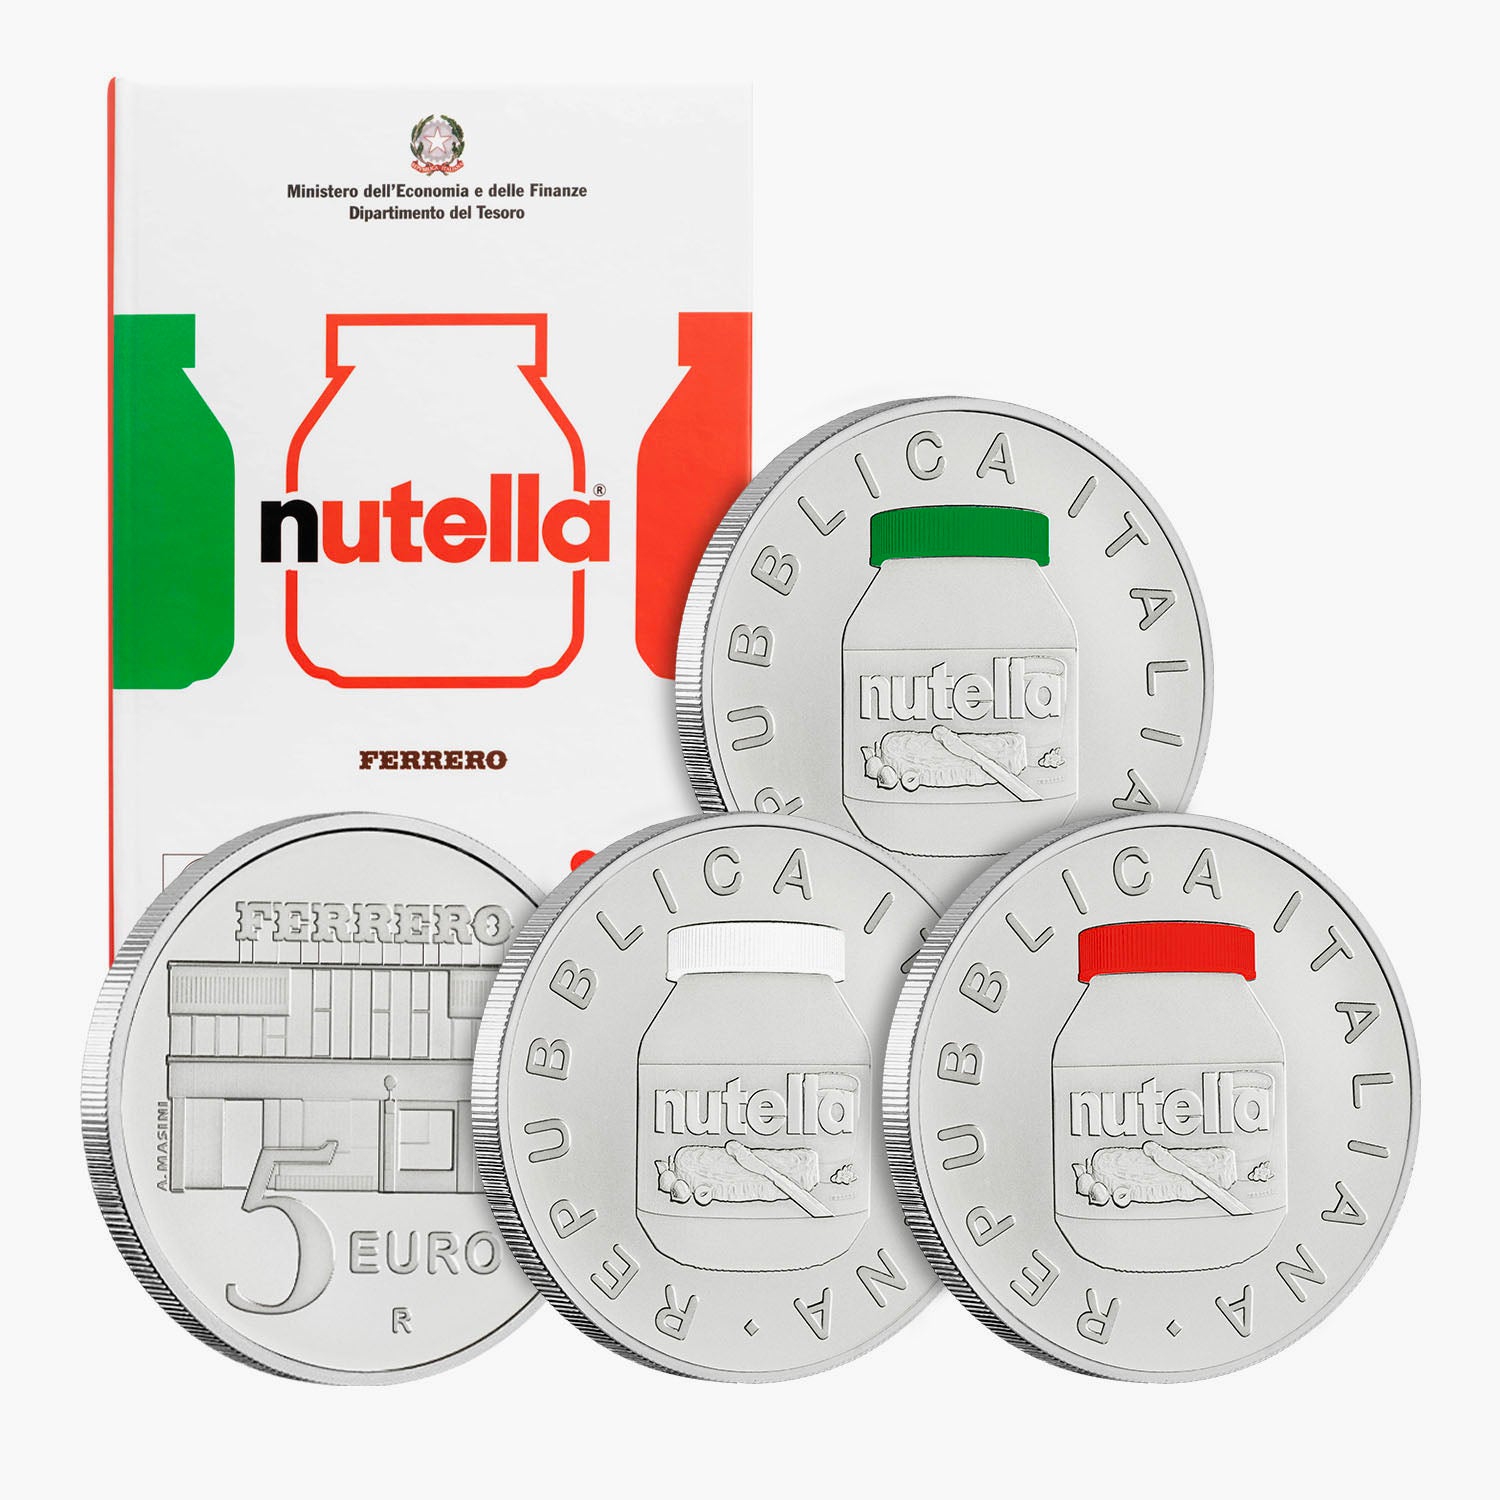 The Nutella 75th Anniversary Italian Coin Set